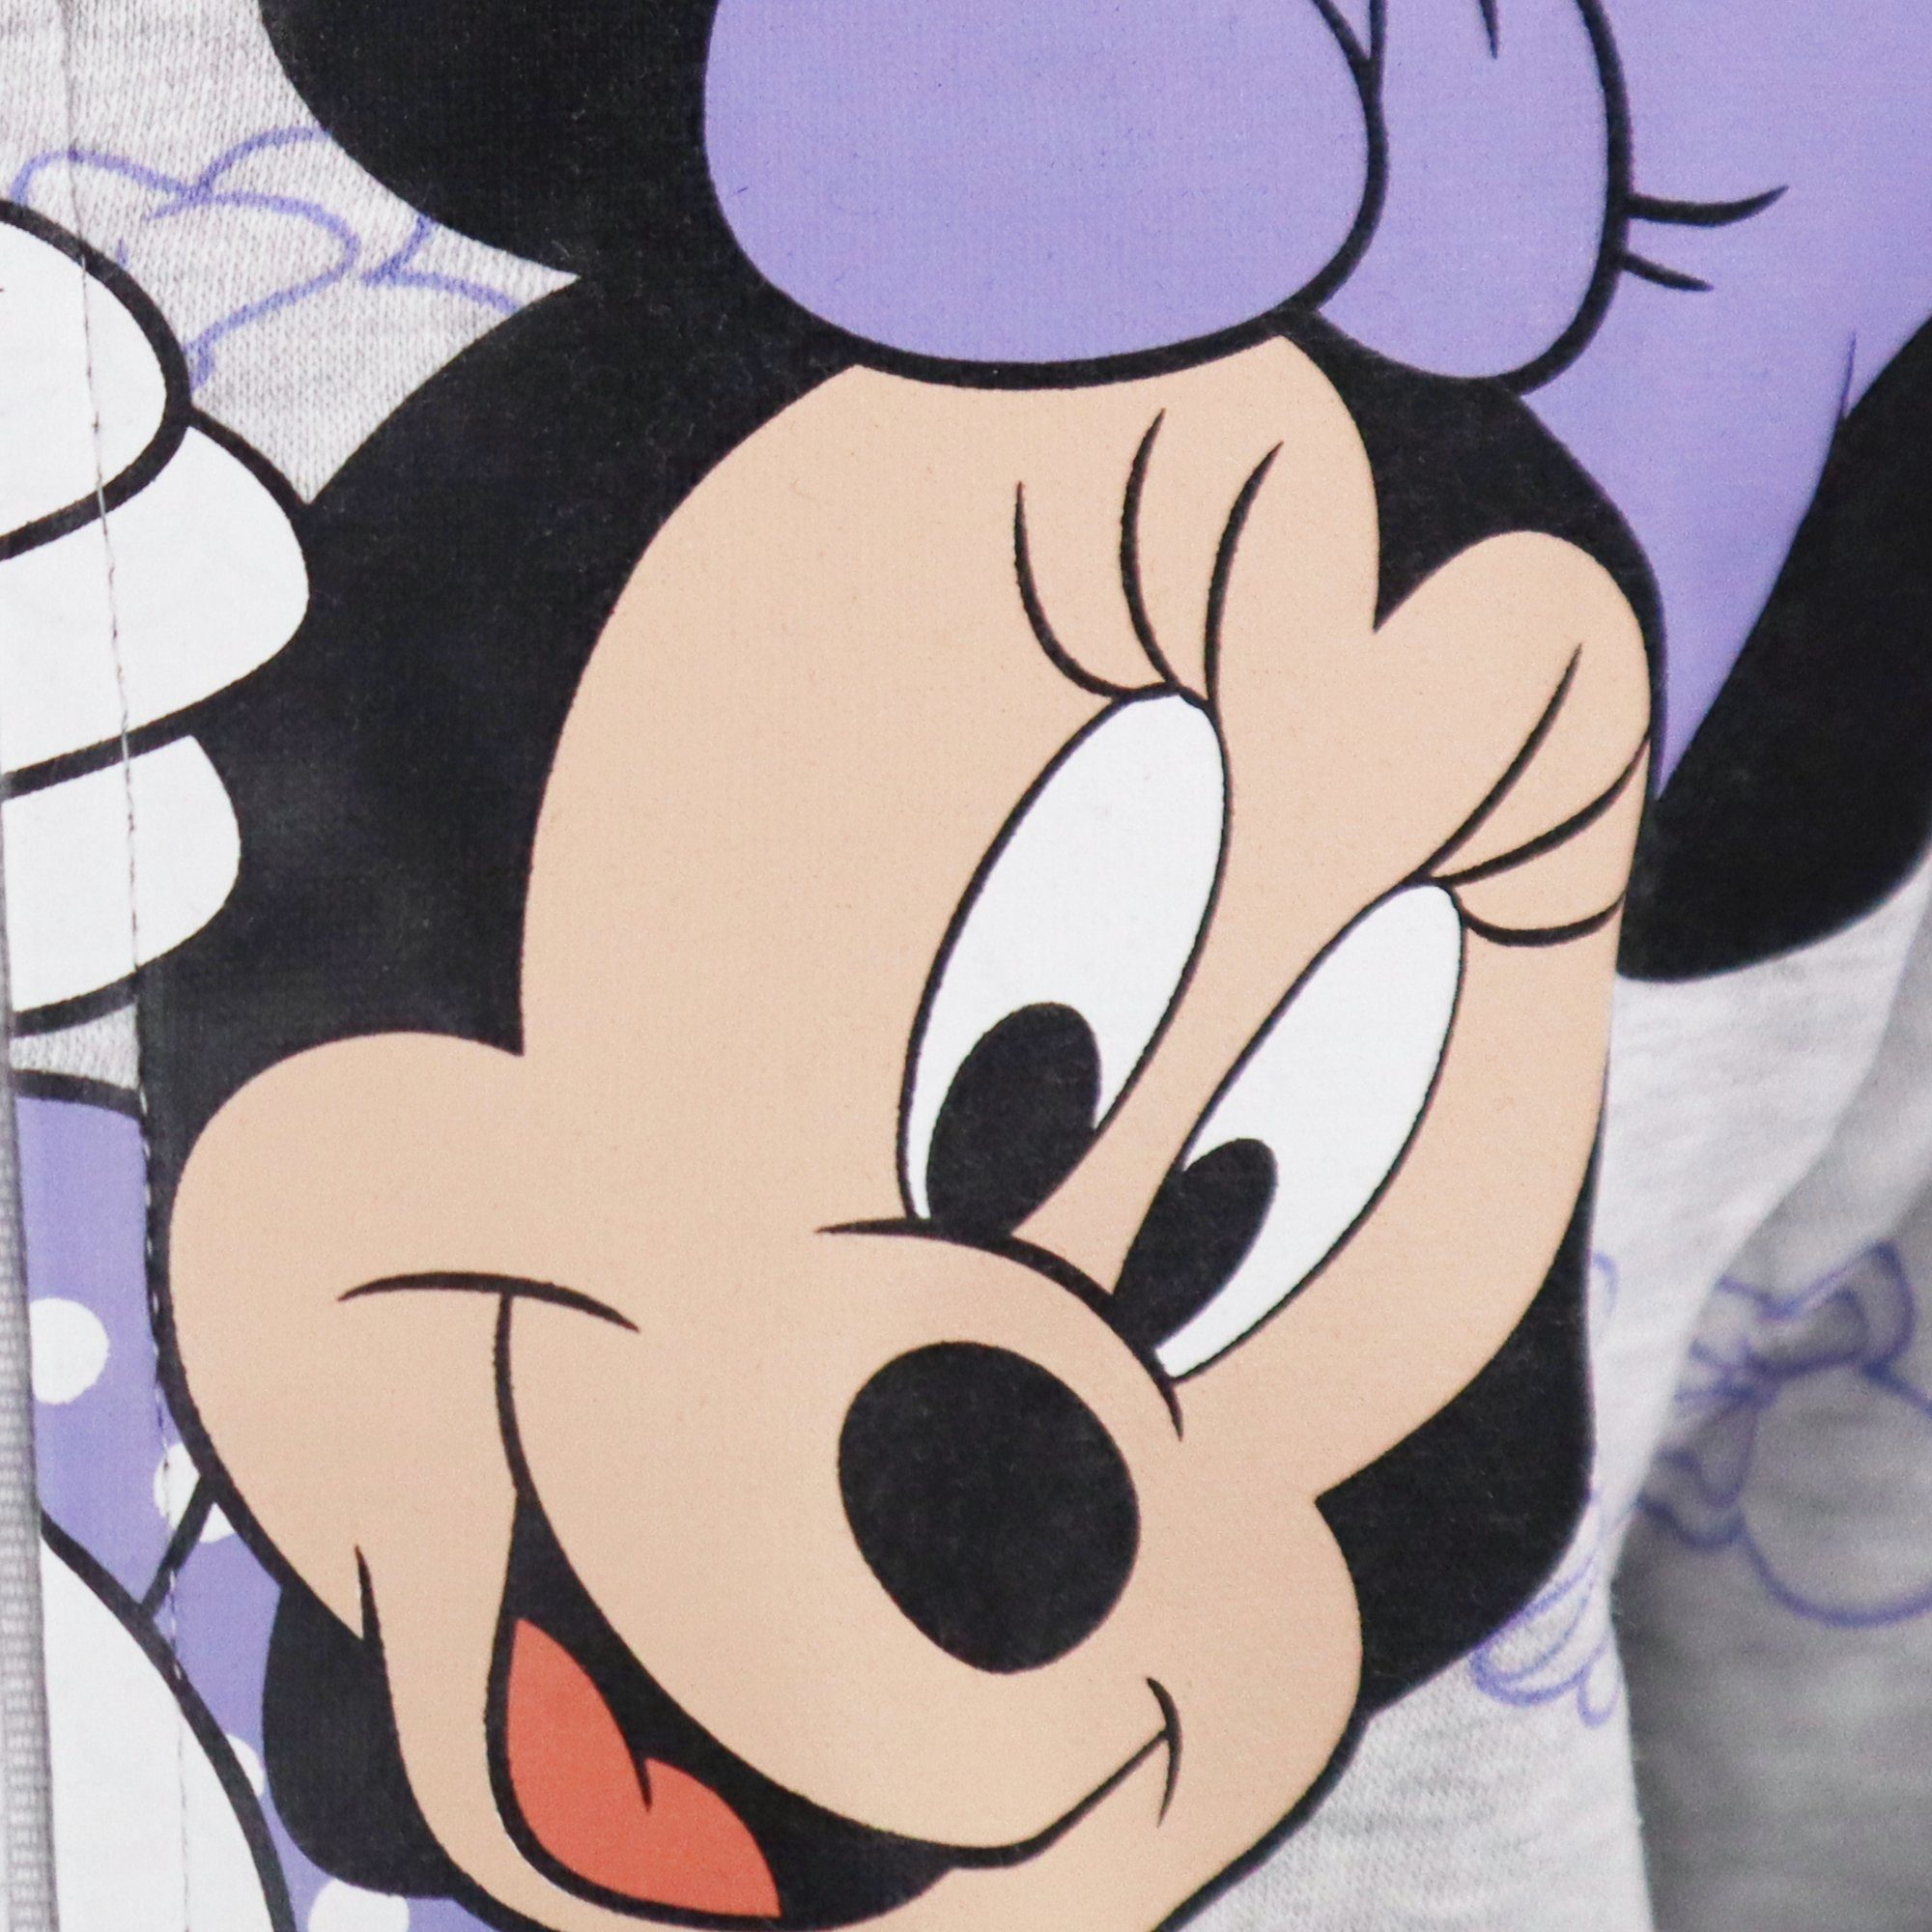 Grau Pullover Mädchen Gr. Sweater Kinder Pulli 98-128 Disney Maus Reißverschluss Minnie Disney